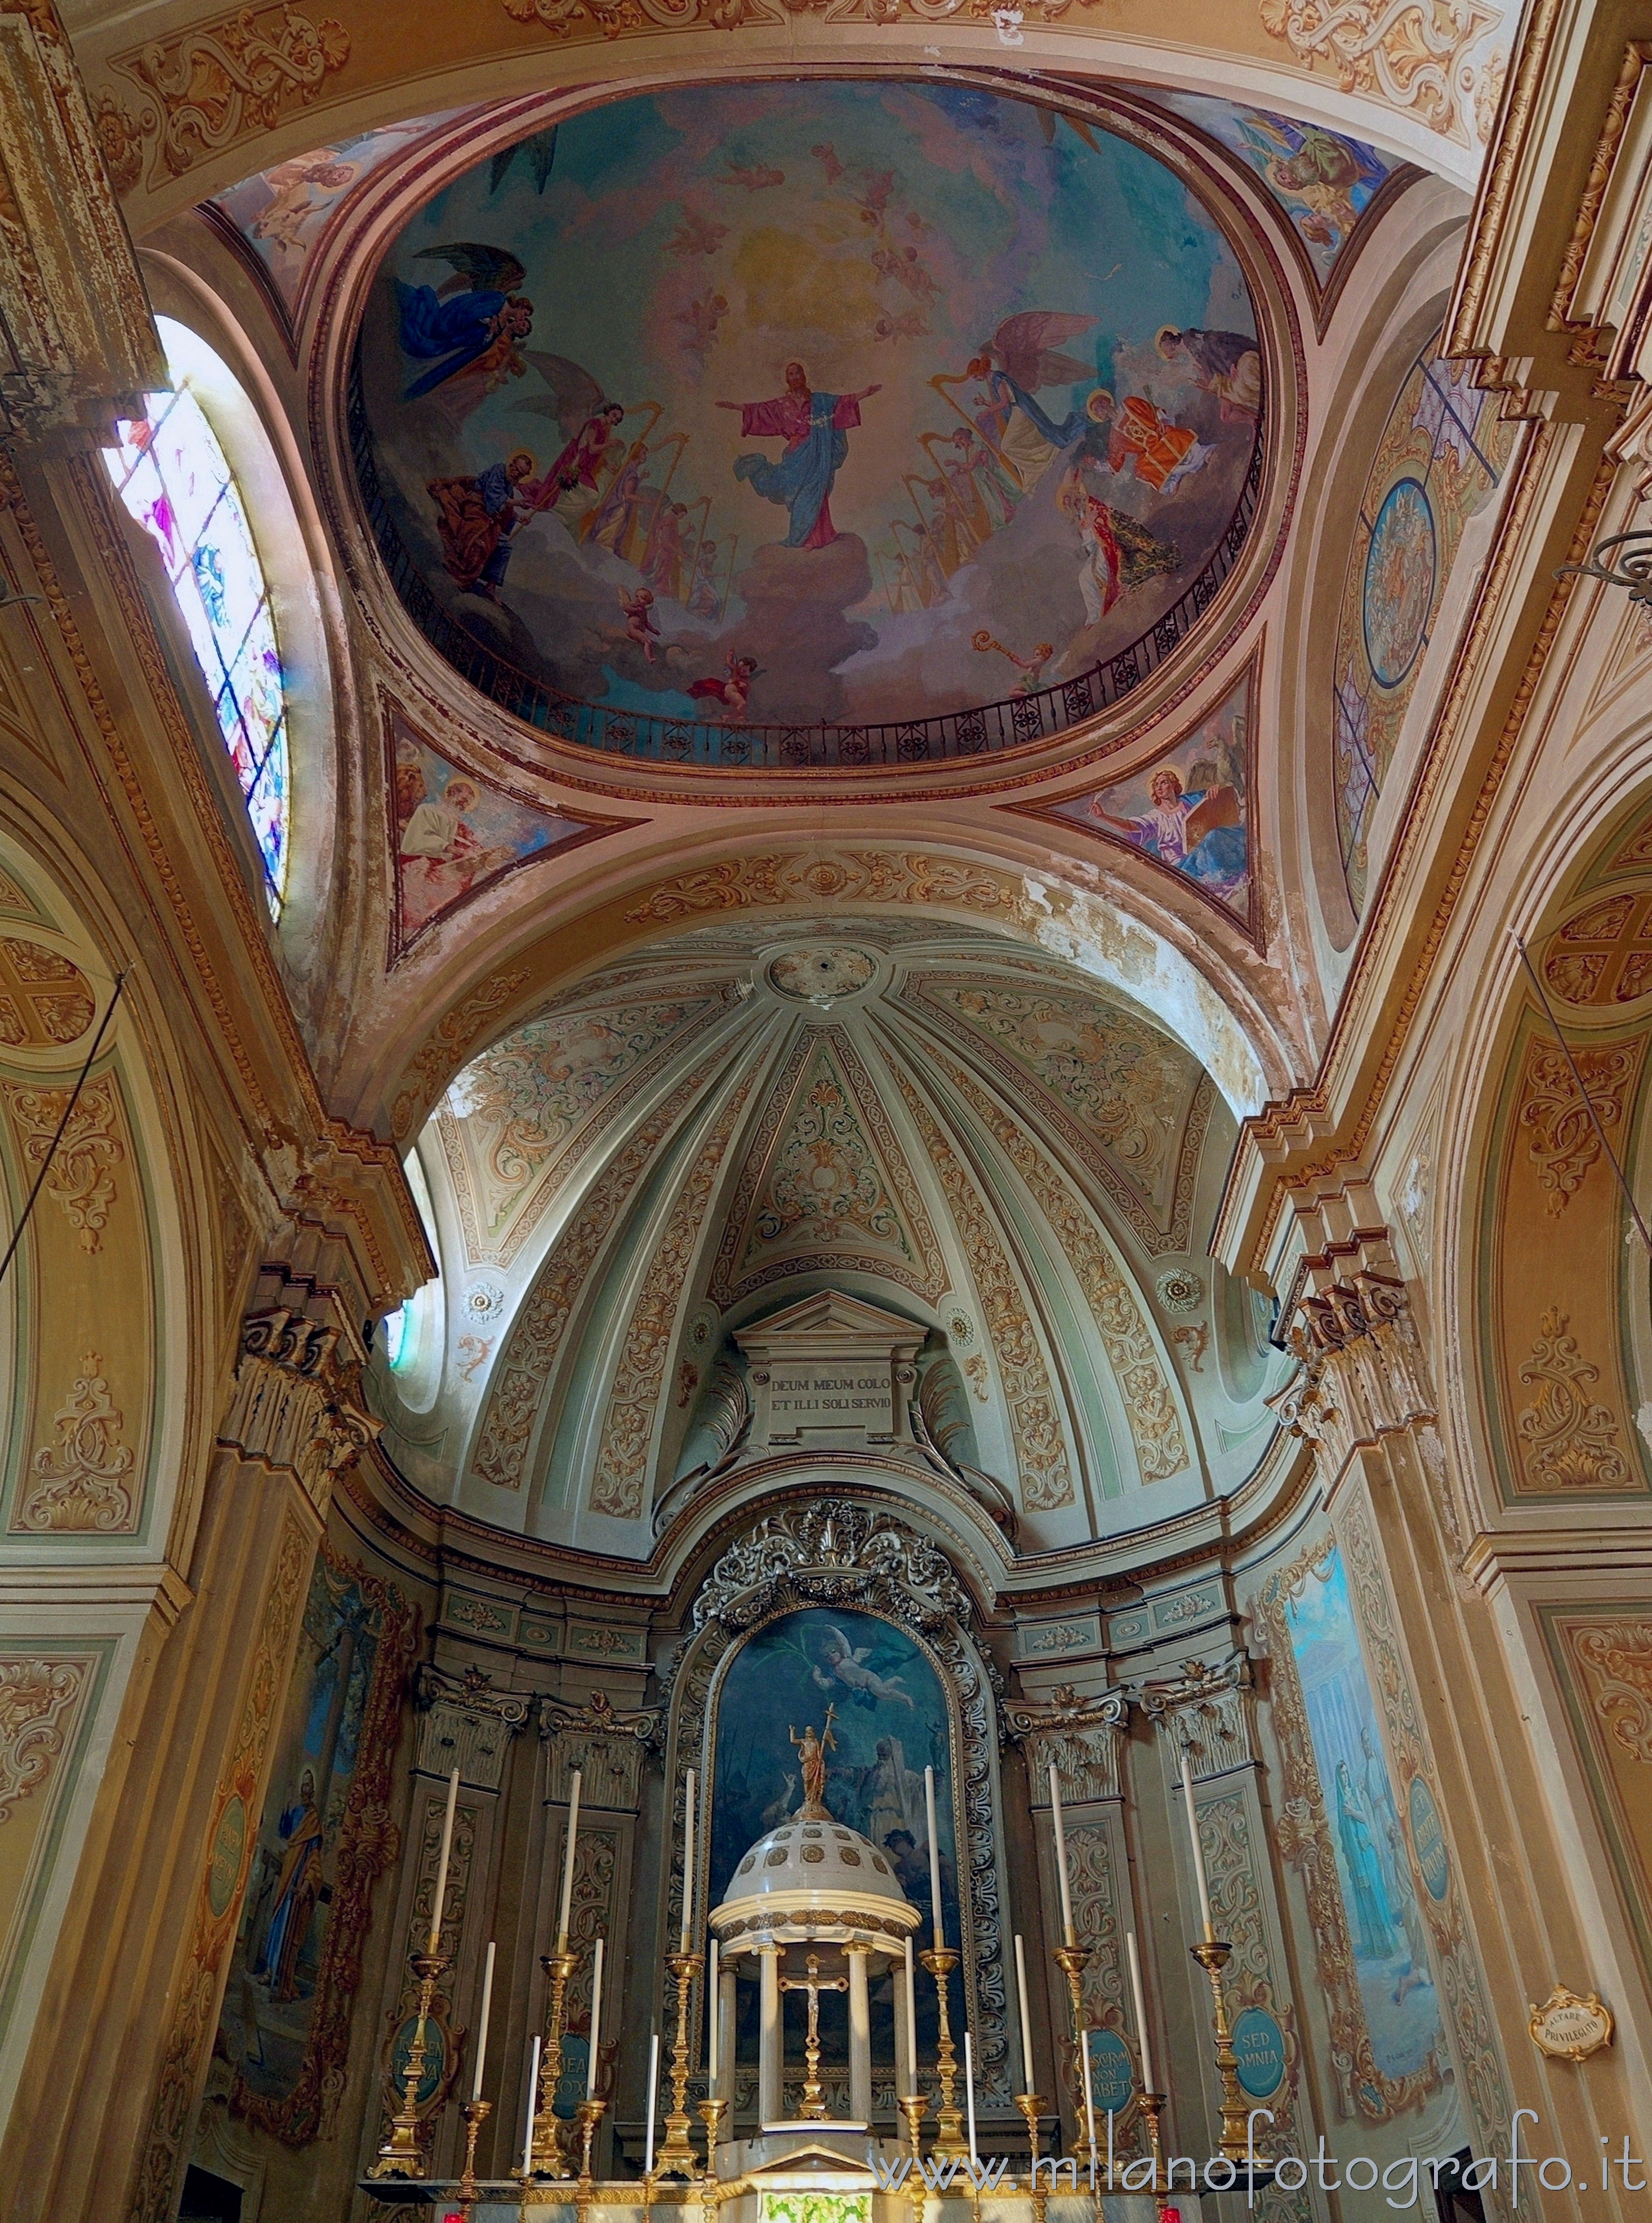 Andorno Micca (Biella, Italy) - Apse of the Church of San Lorenzo